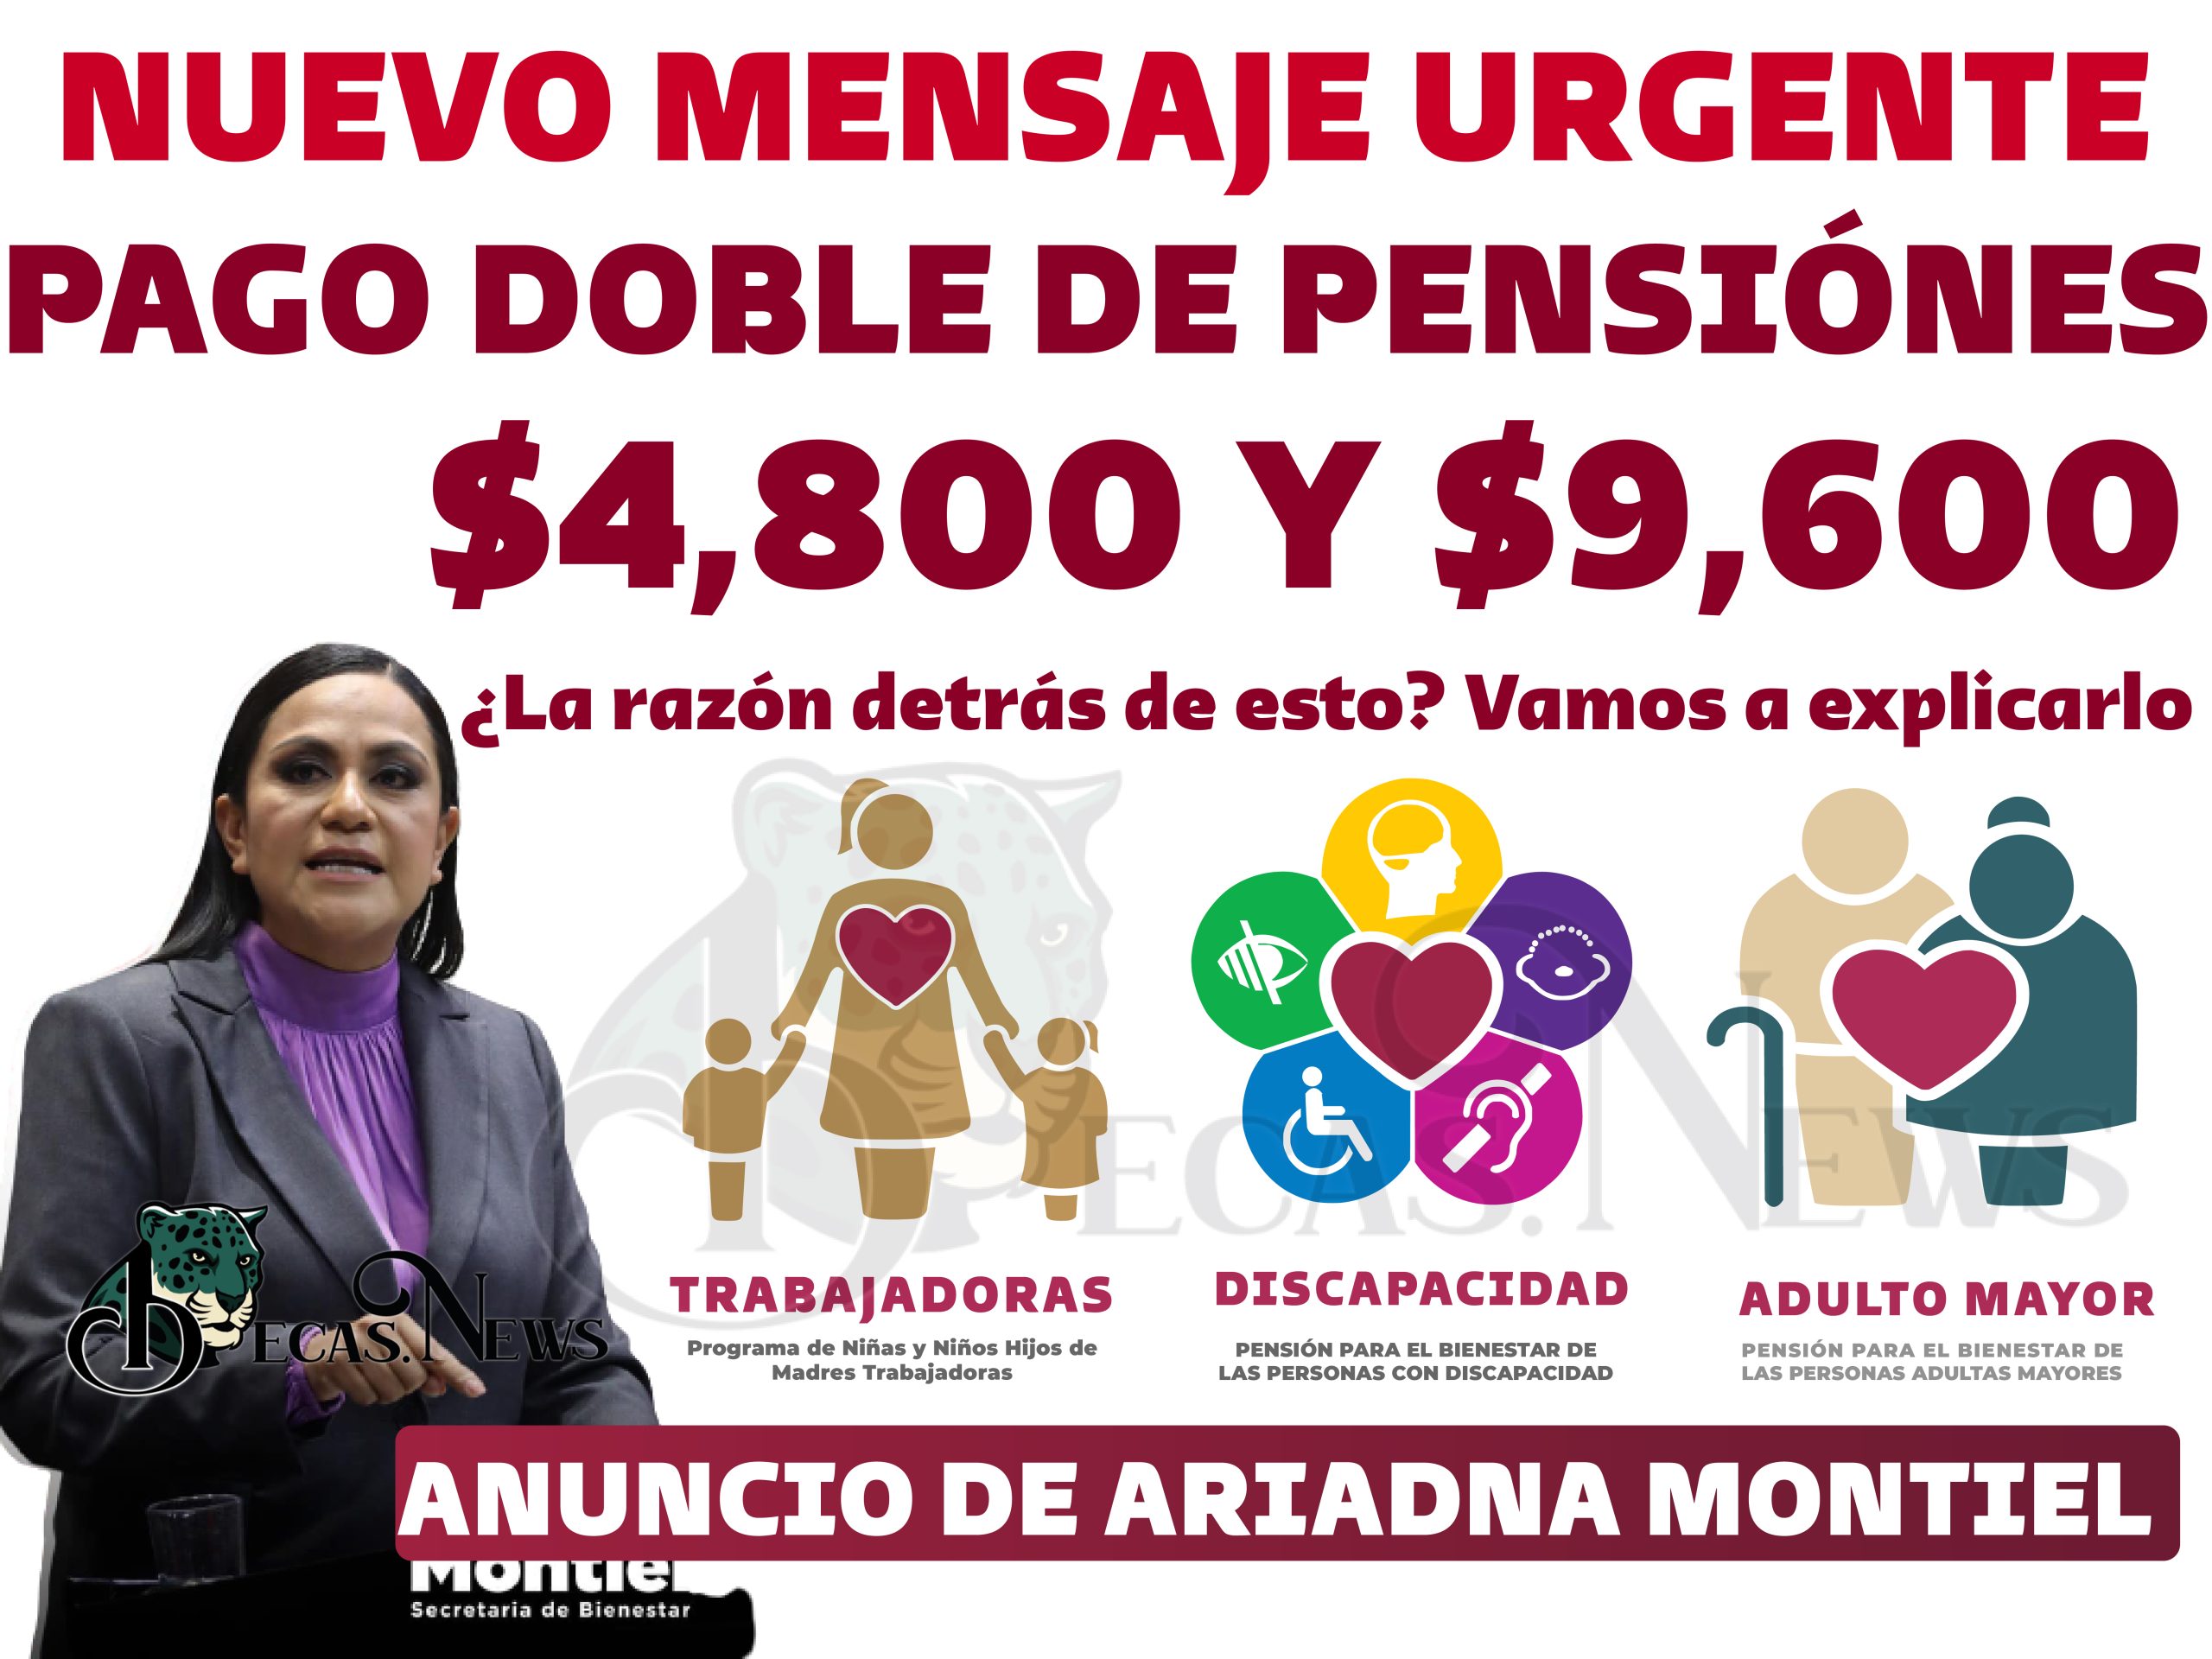 ¡NUEVO MENSAJE! ¿Quiénes recibirán el doble beneficio de 9,600 pesos?: Pensión Bienestar 2023